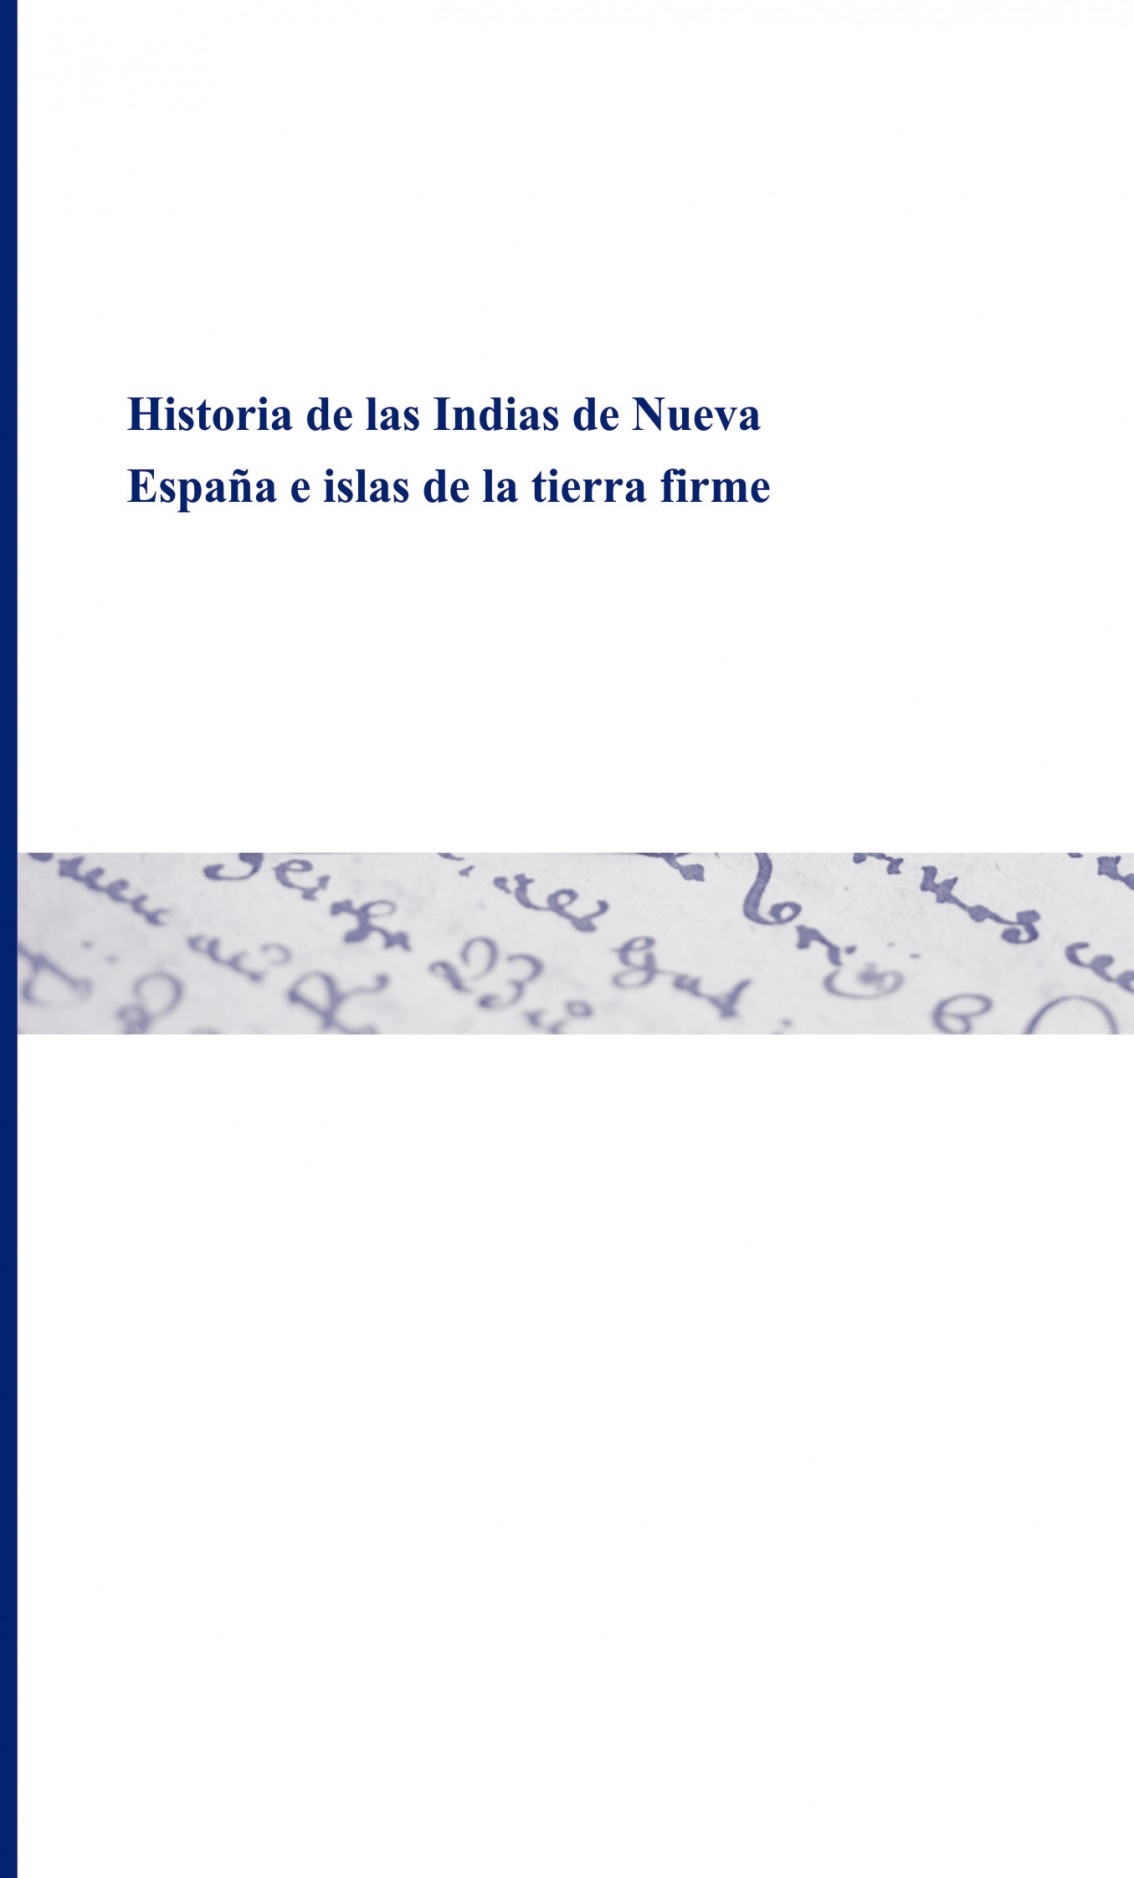 Historia de las Indias de Nueva España e Islas de Tierra Firme